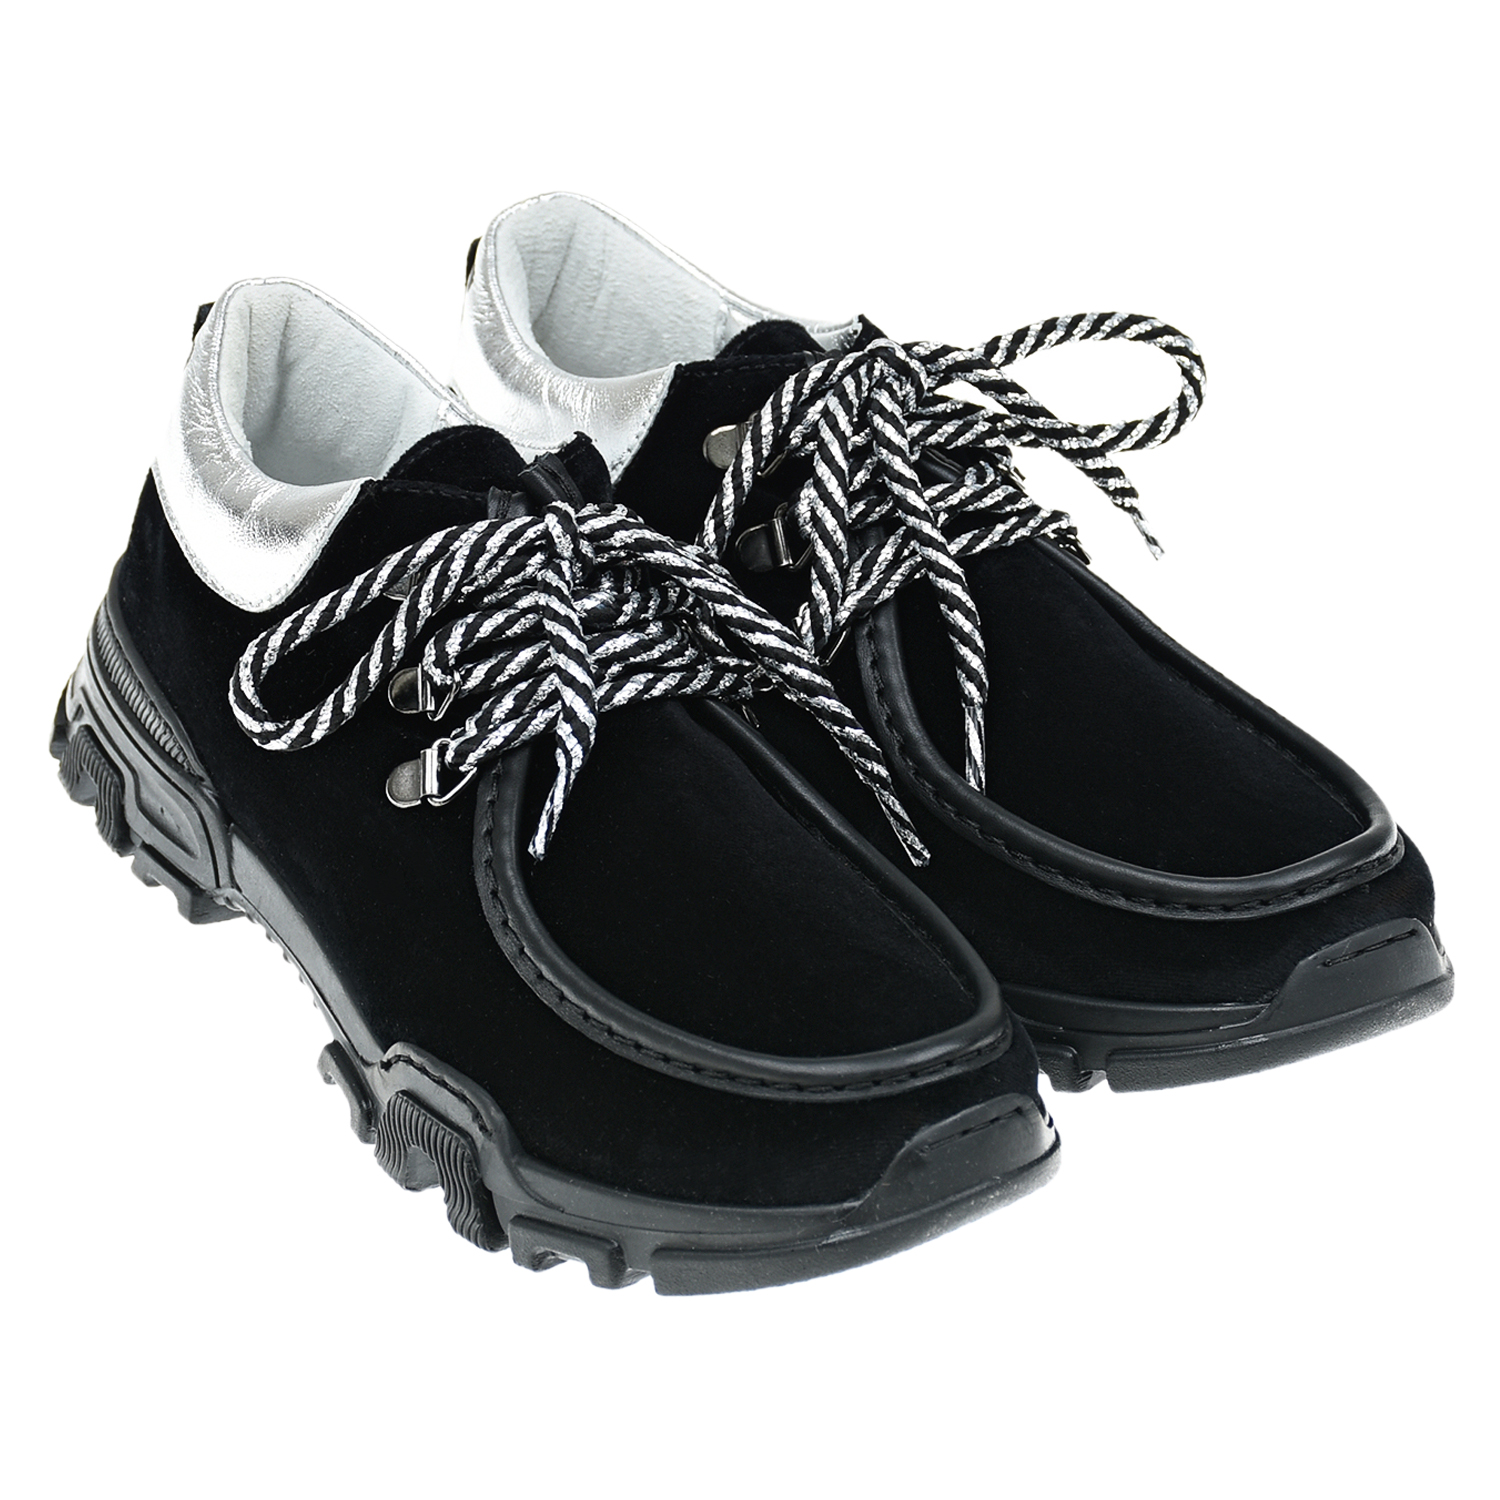 Низкие ботинки для девочек Monnalisa детские, размер 38, цвет черный - фото 1